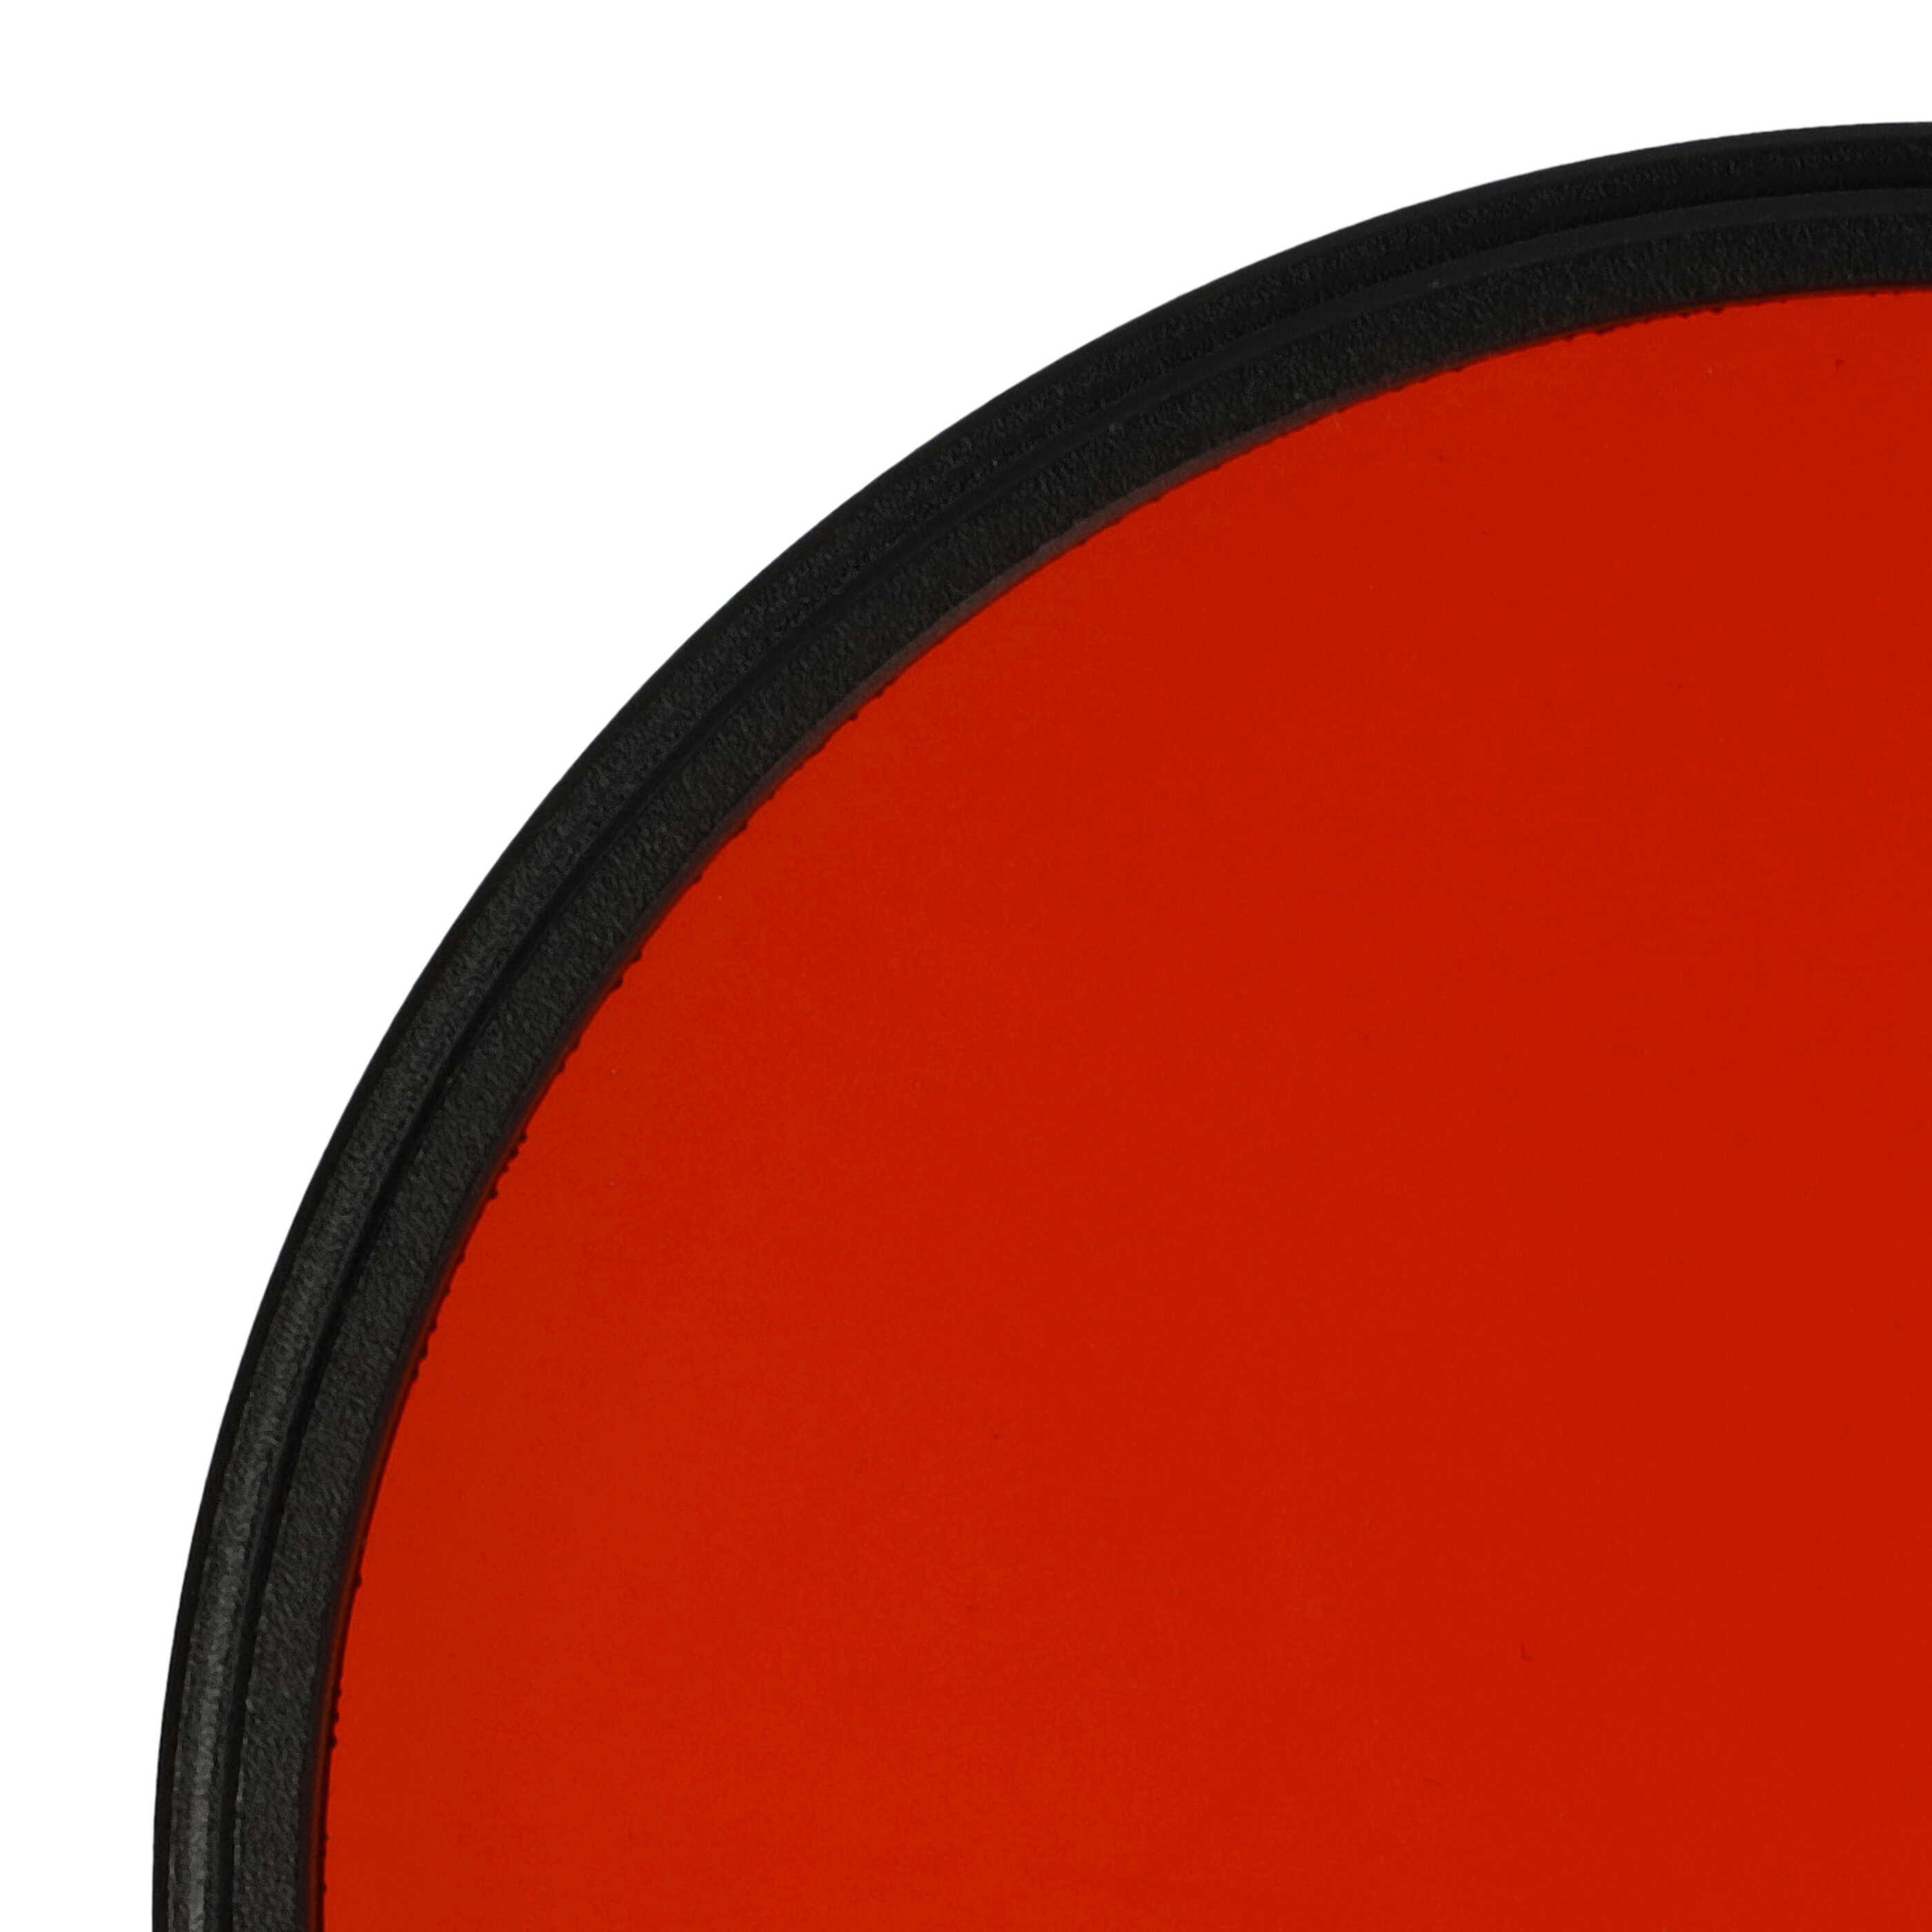 Farbfilter orange passend für Kamera Objektive mit 72 mm Filtergewinde - Orangefilter